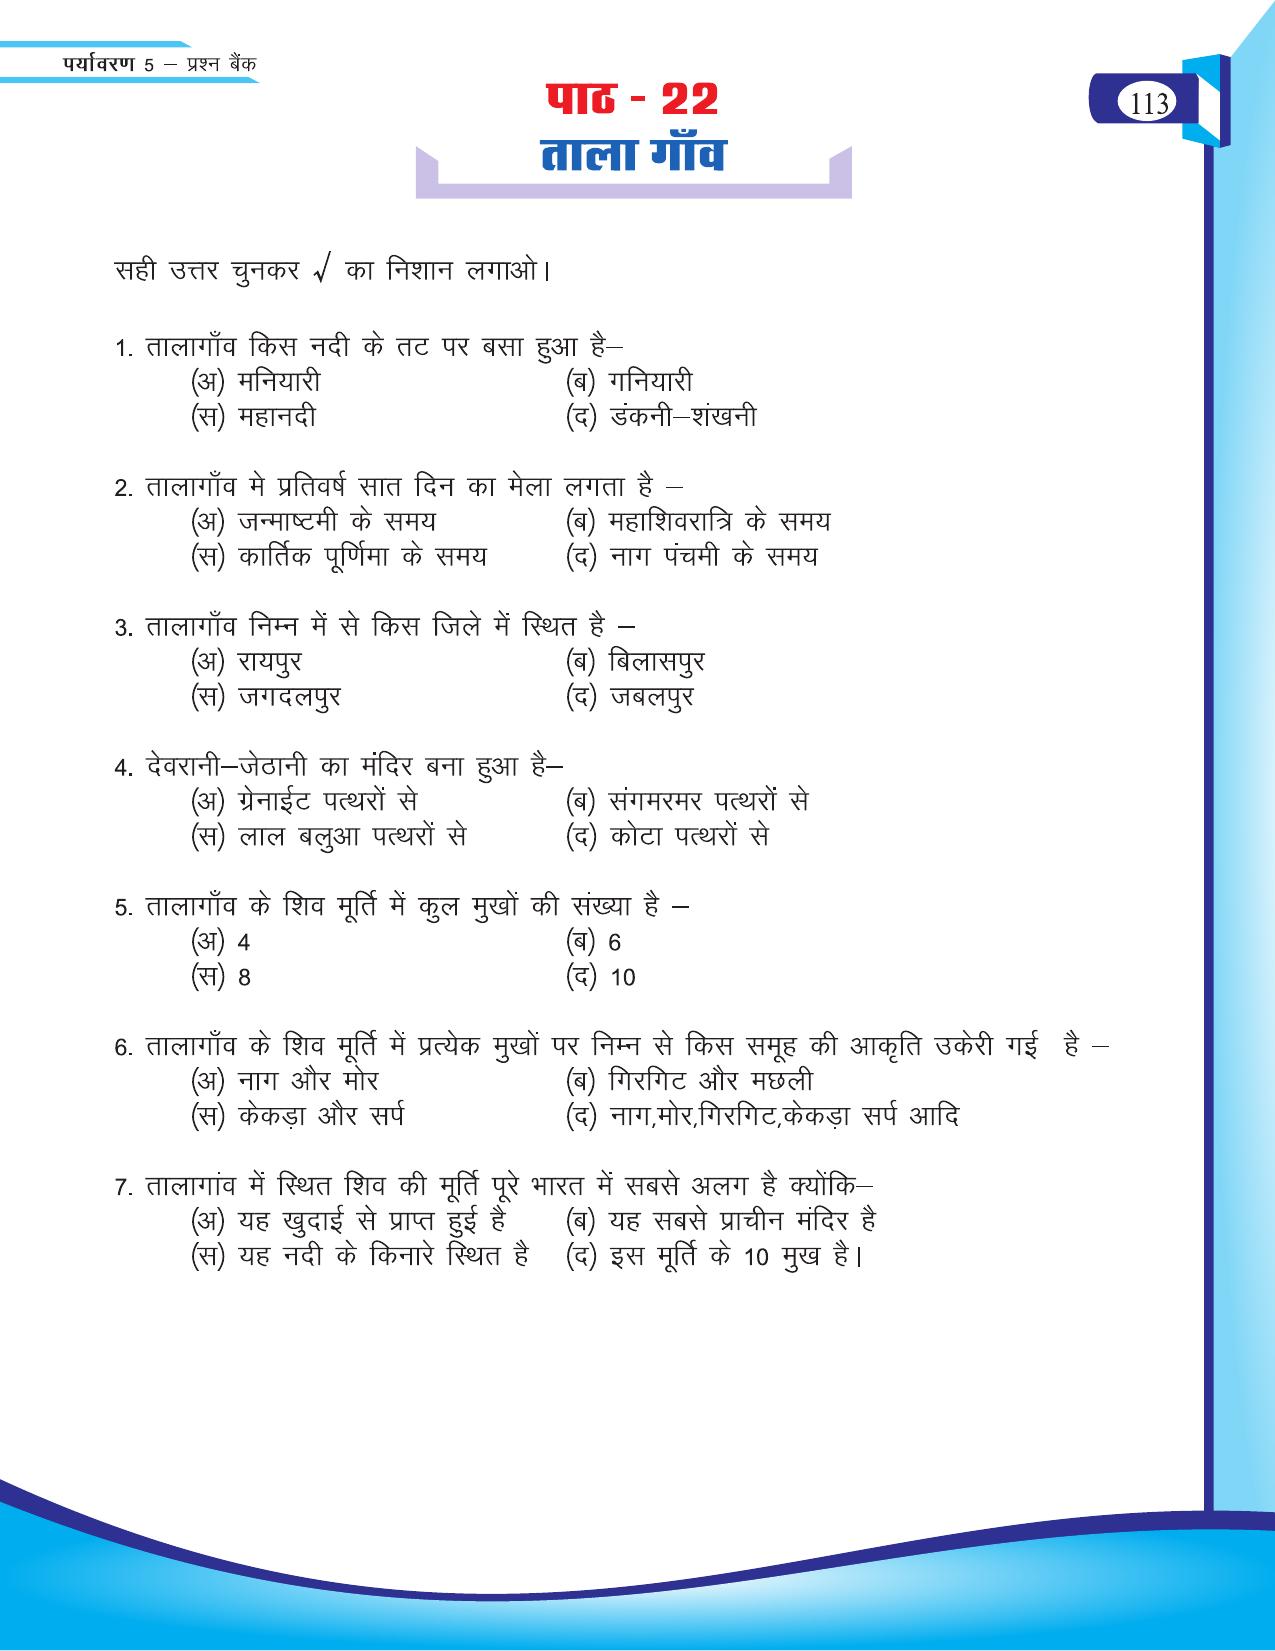 Chhattisgarh Board Class 5 EVS Question Bank 2015-16 - Page 39